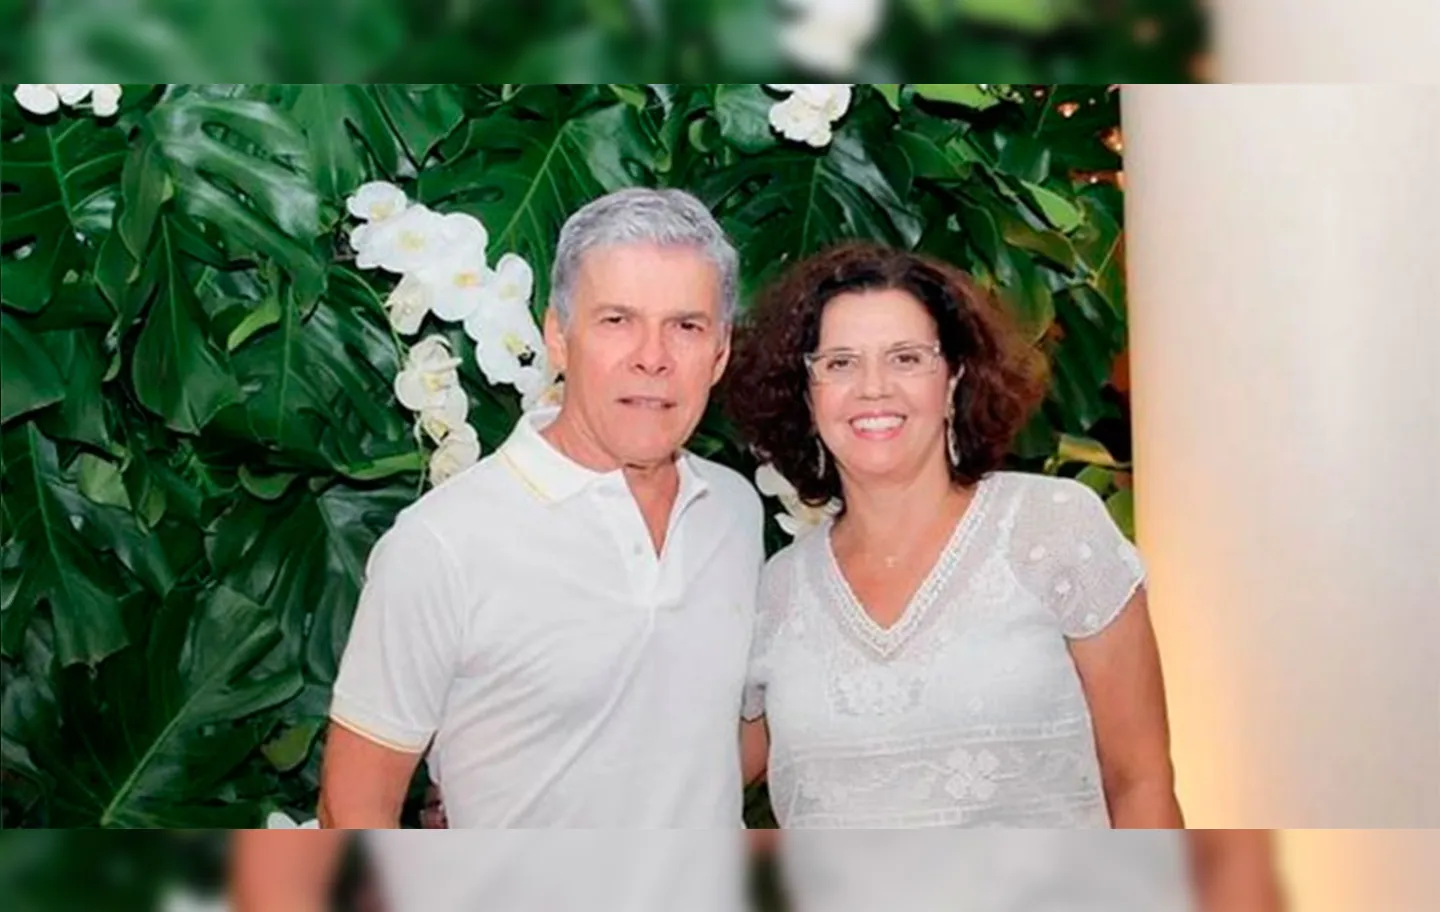 José Mayer e Vera estão casados há 45 anos